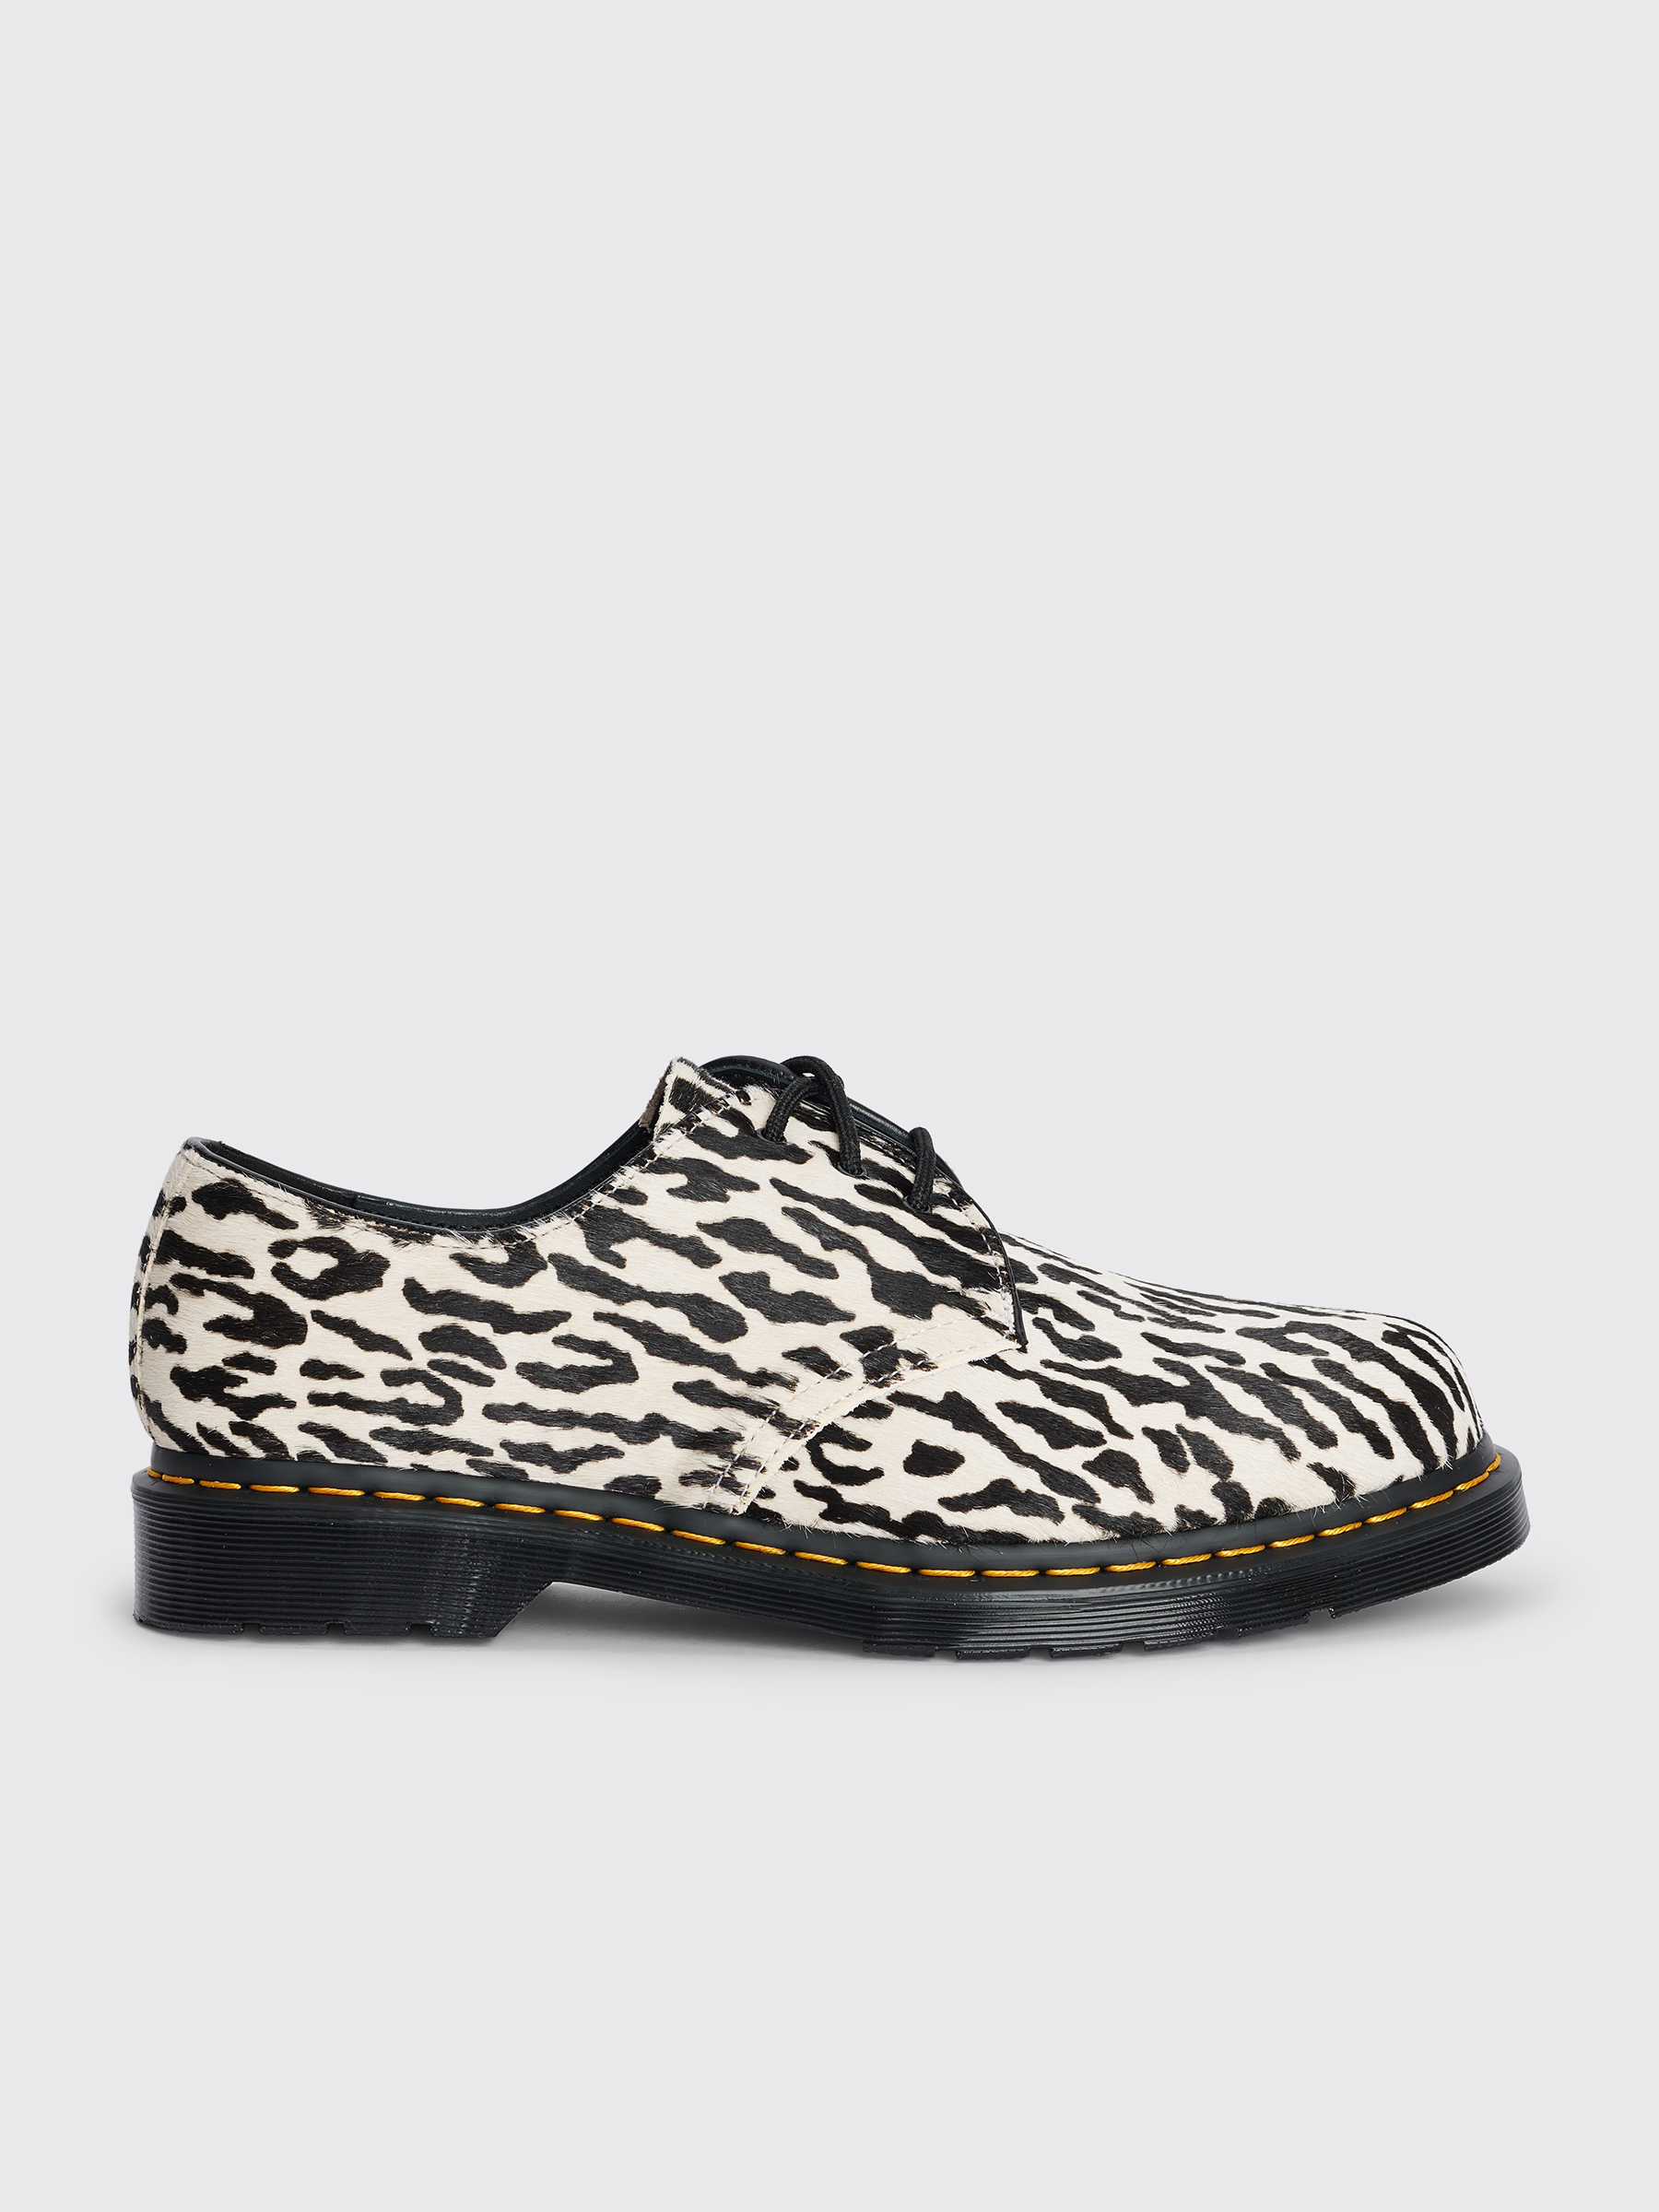 Dr. Martens x Wacko Maria 1461 Tiger Camo Shoes Black / White